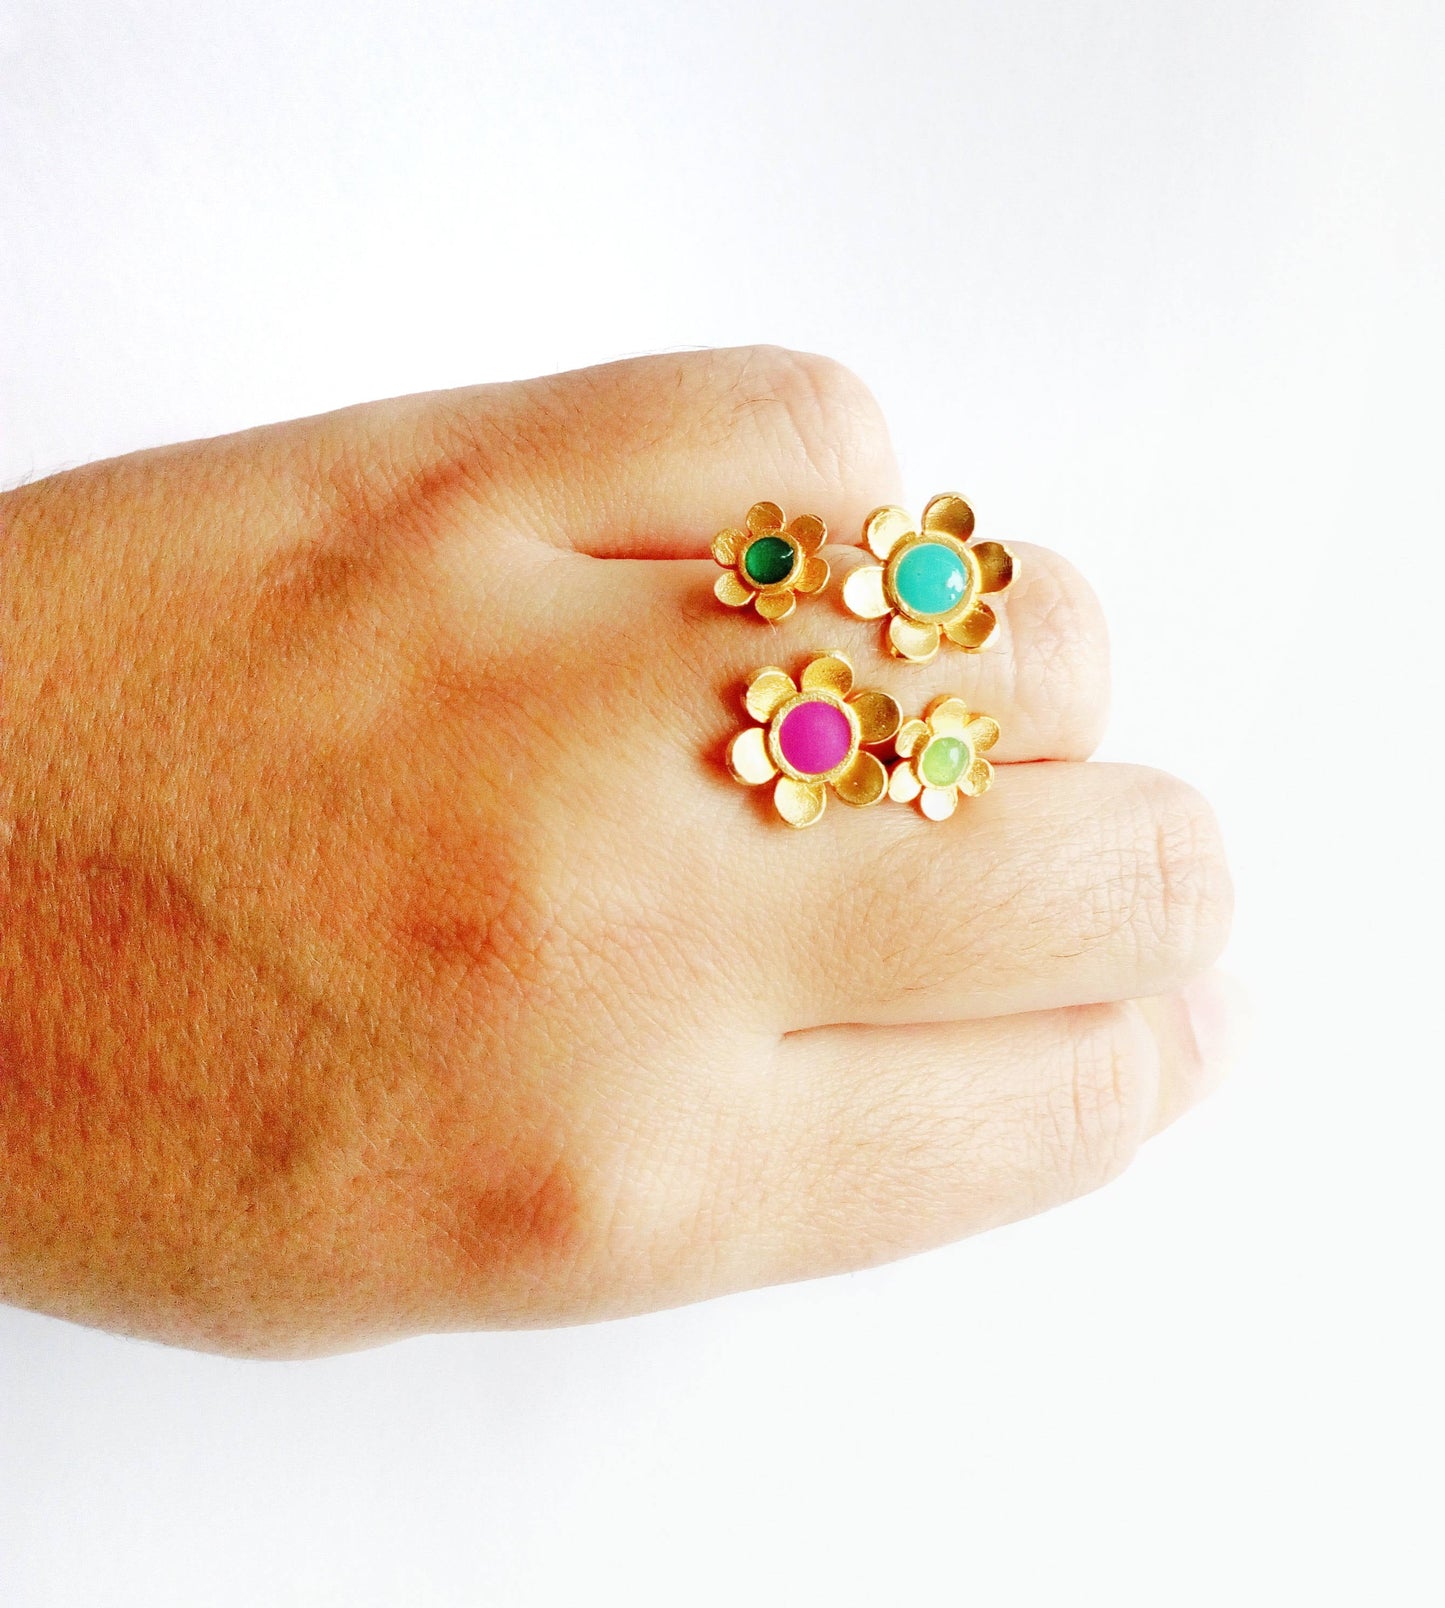 Enamel Flower Ring, Open Gold Ring, Friendship Rings For 2 3 4